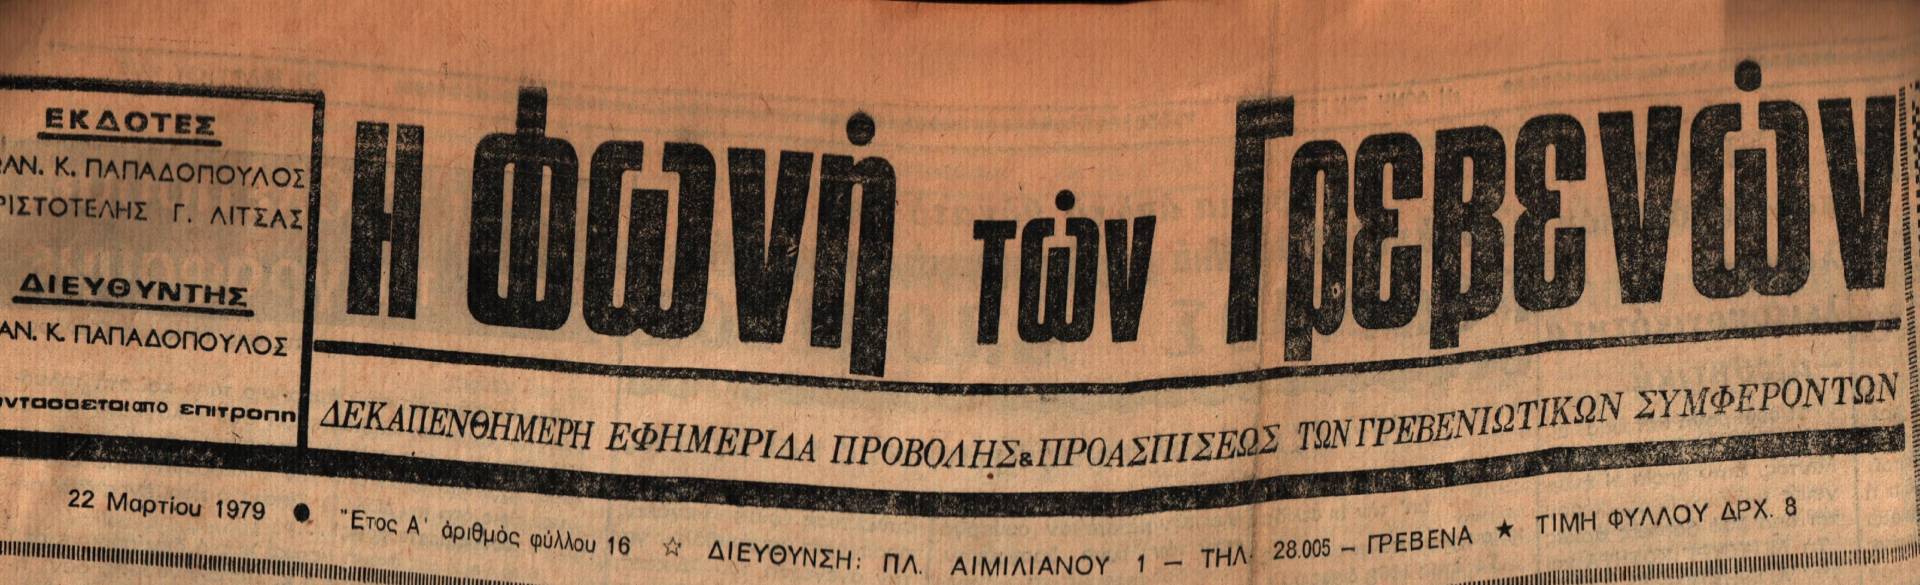 22 Μαρτίου 1979: Η ιστορία των Γρεβενών μέσα από τον Τοπικό Τύπο.Σήμερα: Απάντηση υπουργού στον κ. Παπαθεμελή